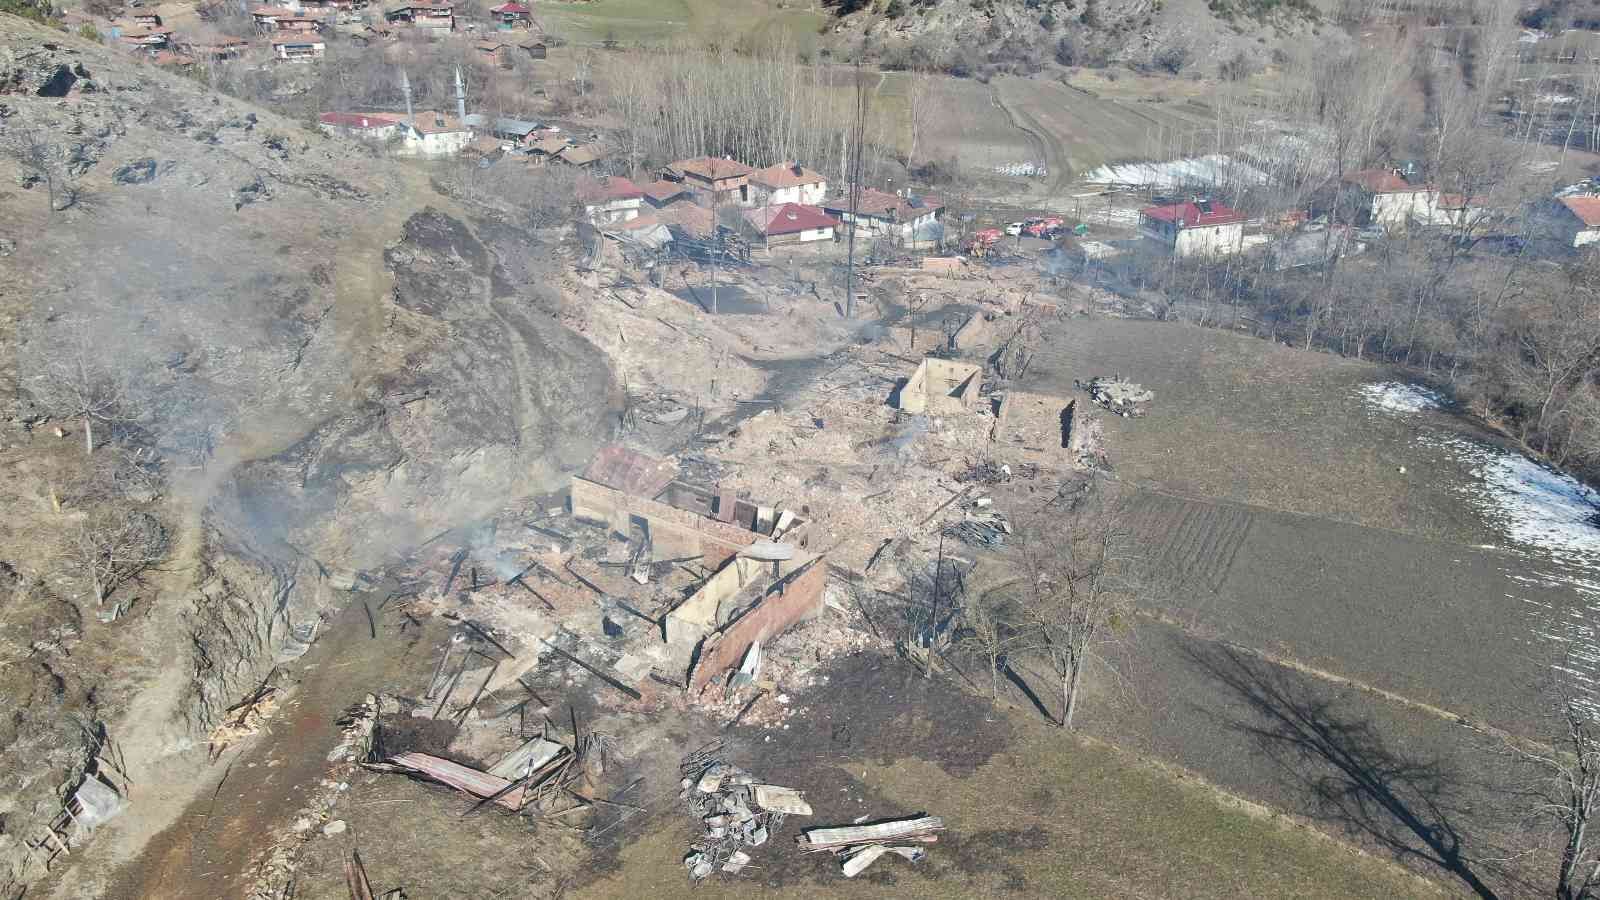 8 gün önce köyde çıkan yangını söndürmüşlerdi, bu sefer köyleri yandı #kastamonu